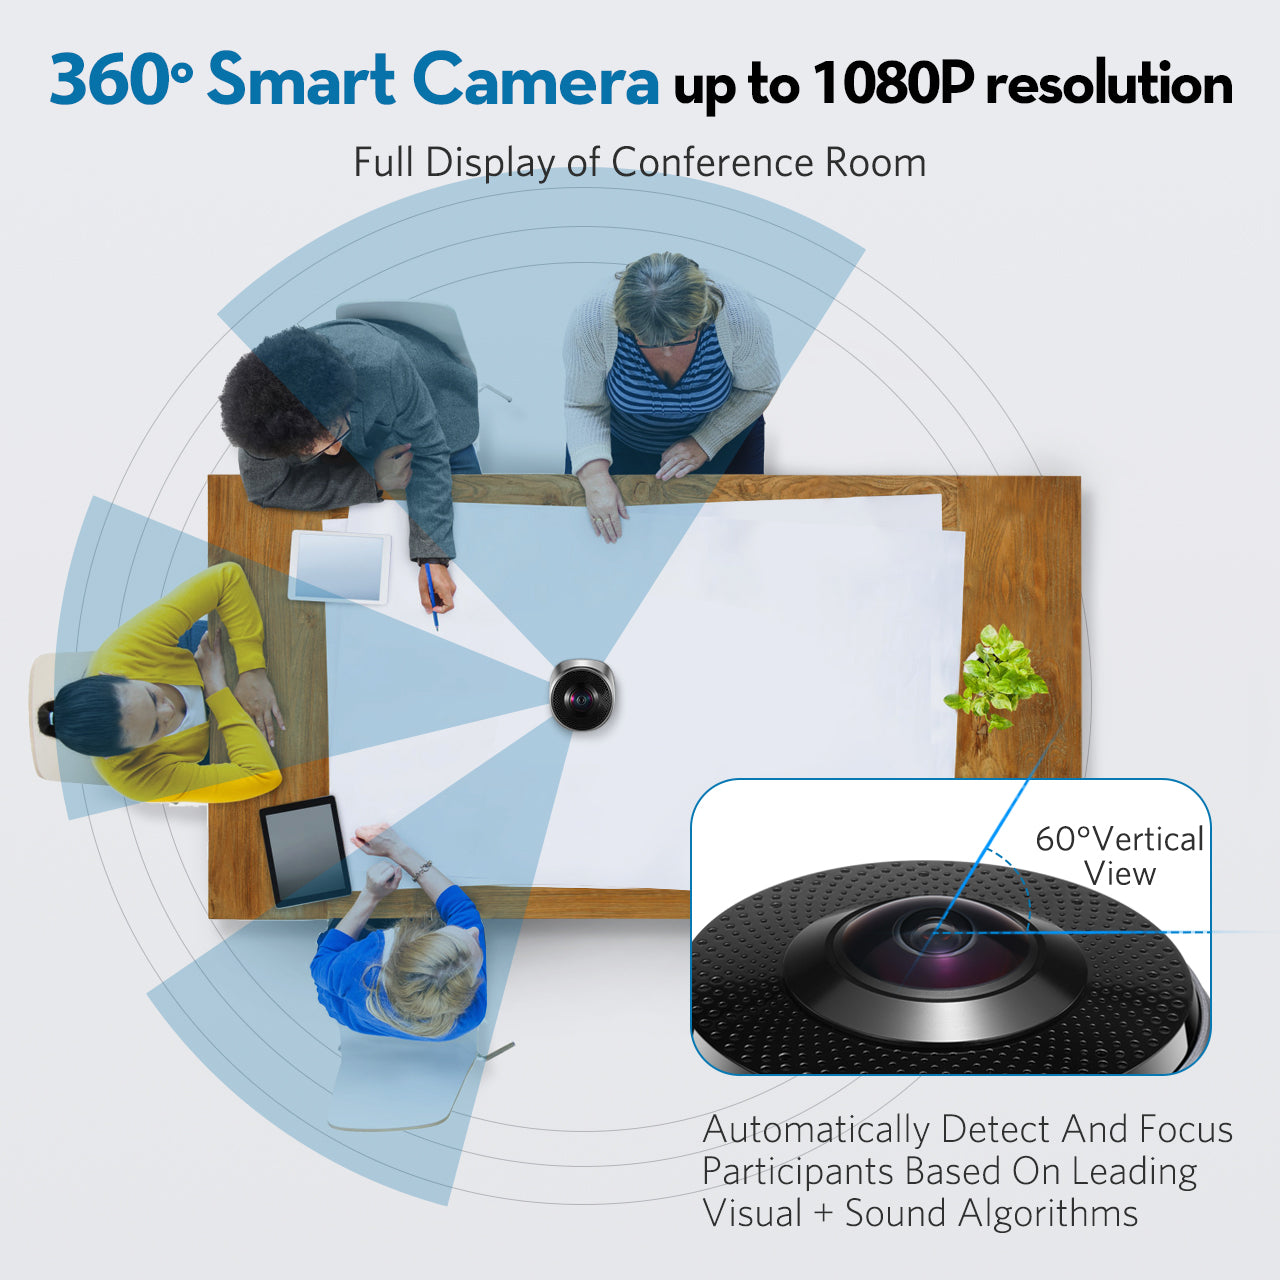 【得価】COOLPO AI HUDDLE PANA 会議用ウェブカメラ 360 Webカメラ